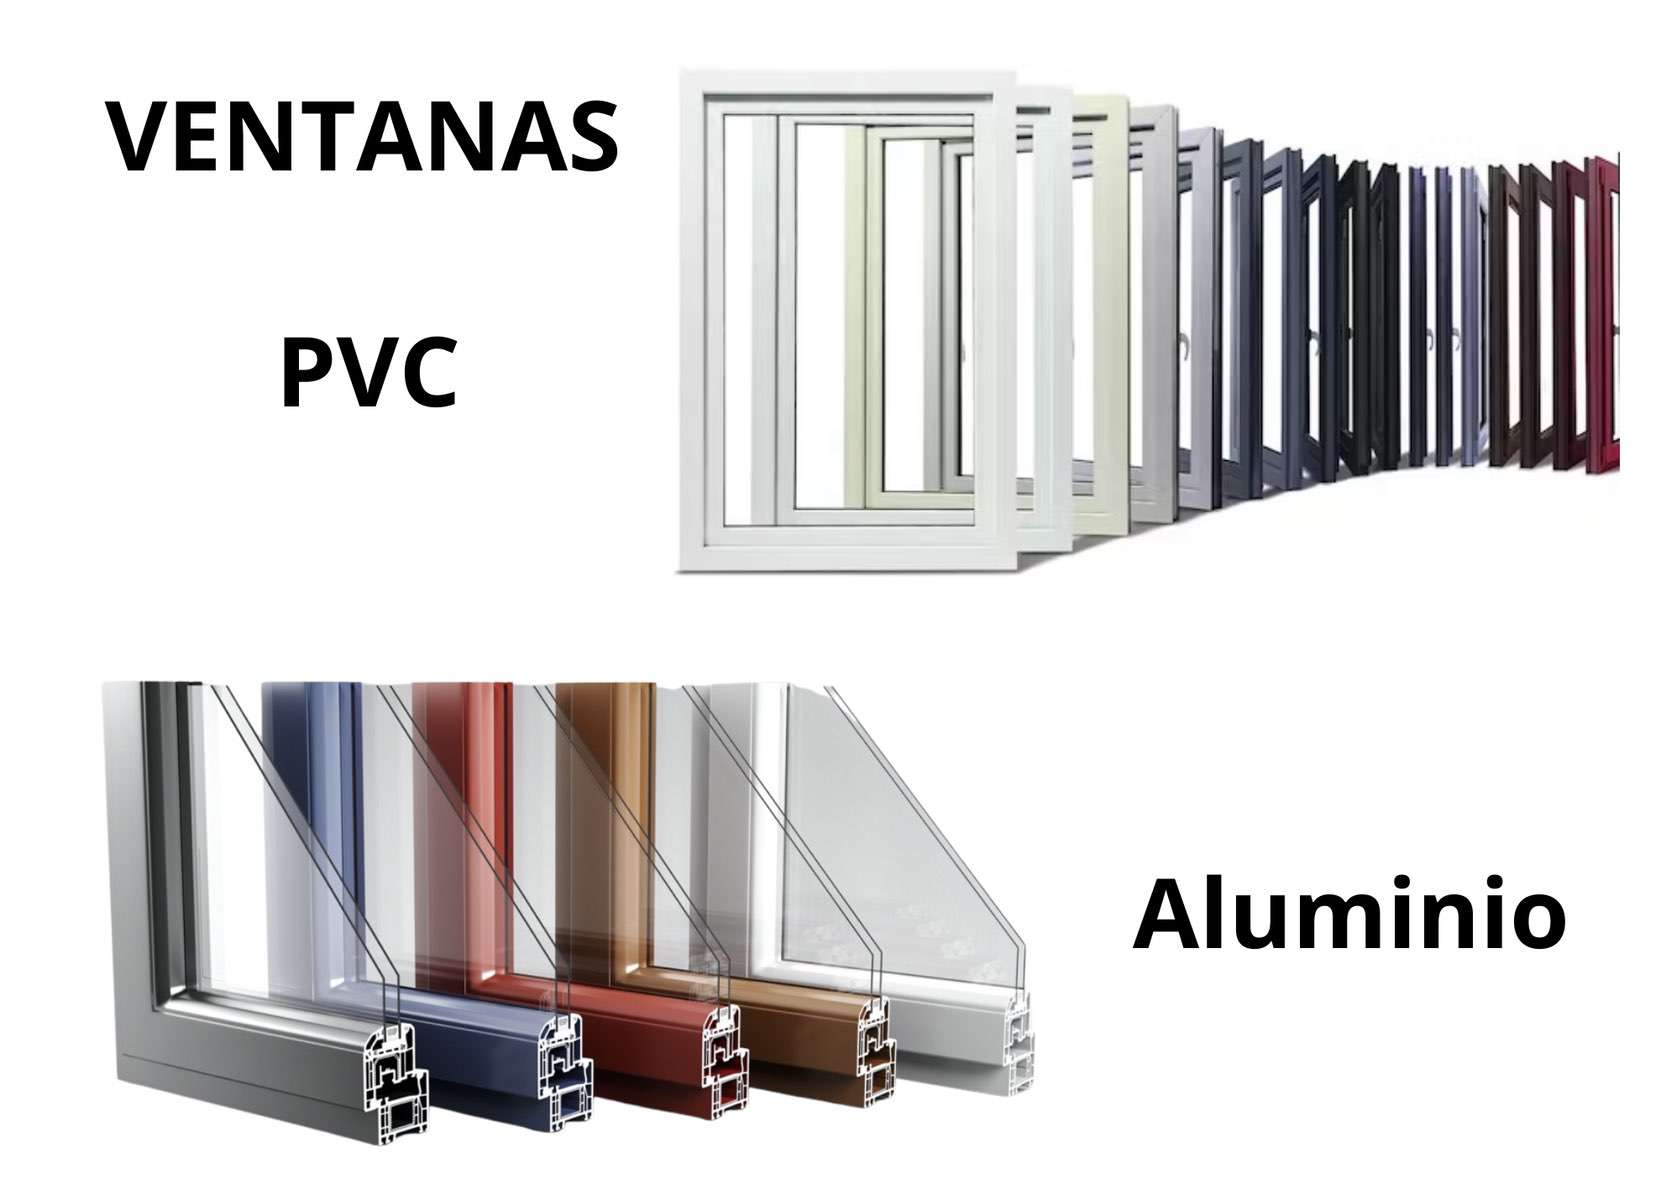 Ventanas Alta Calidad de aluminio y PVC